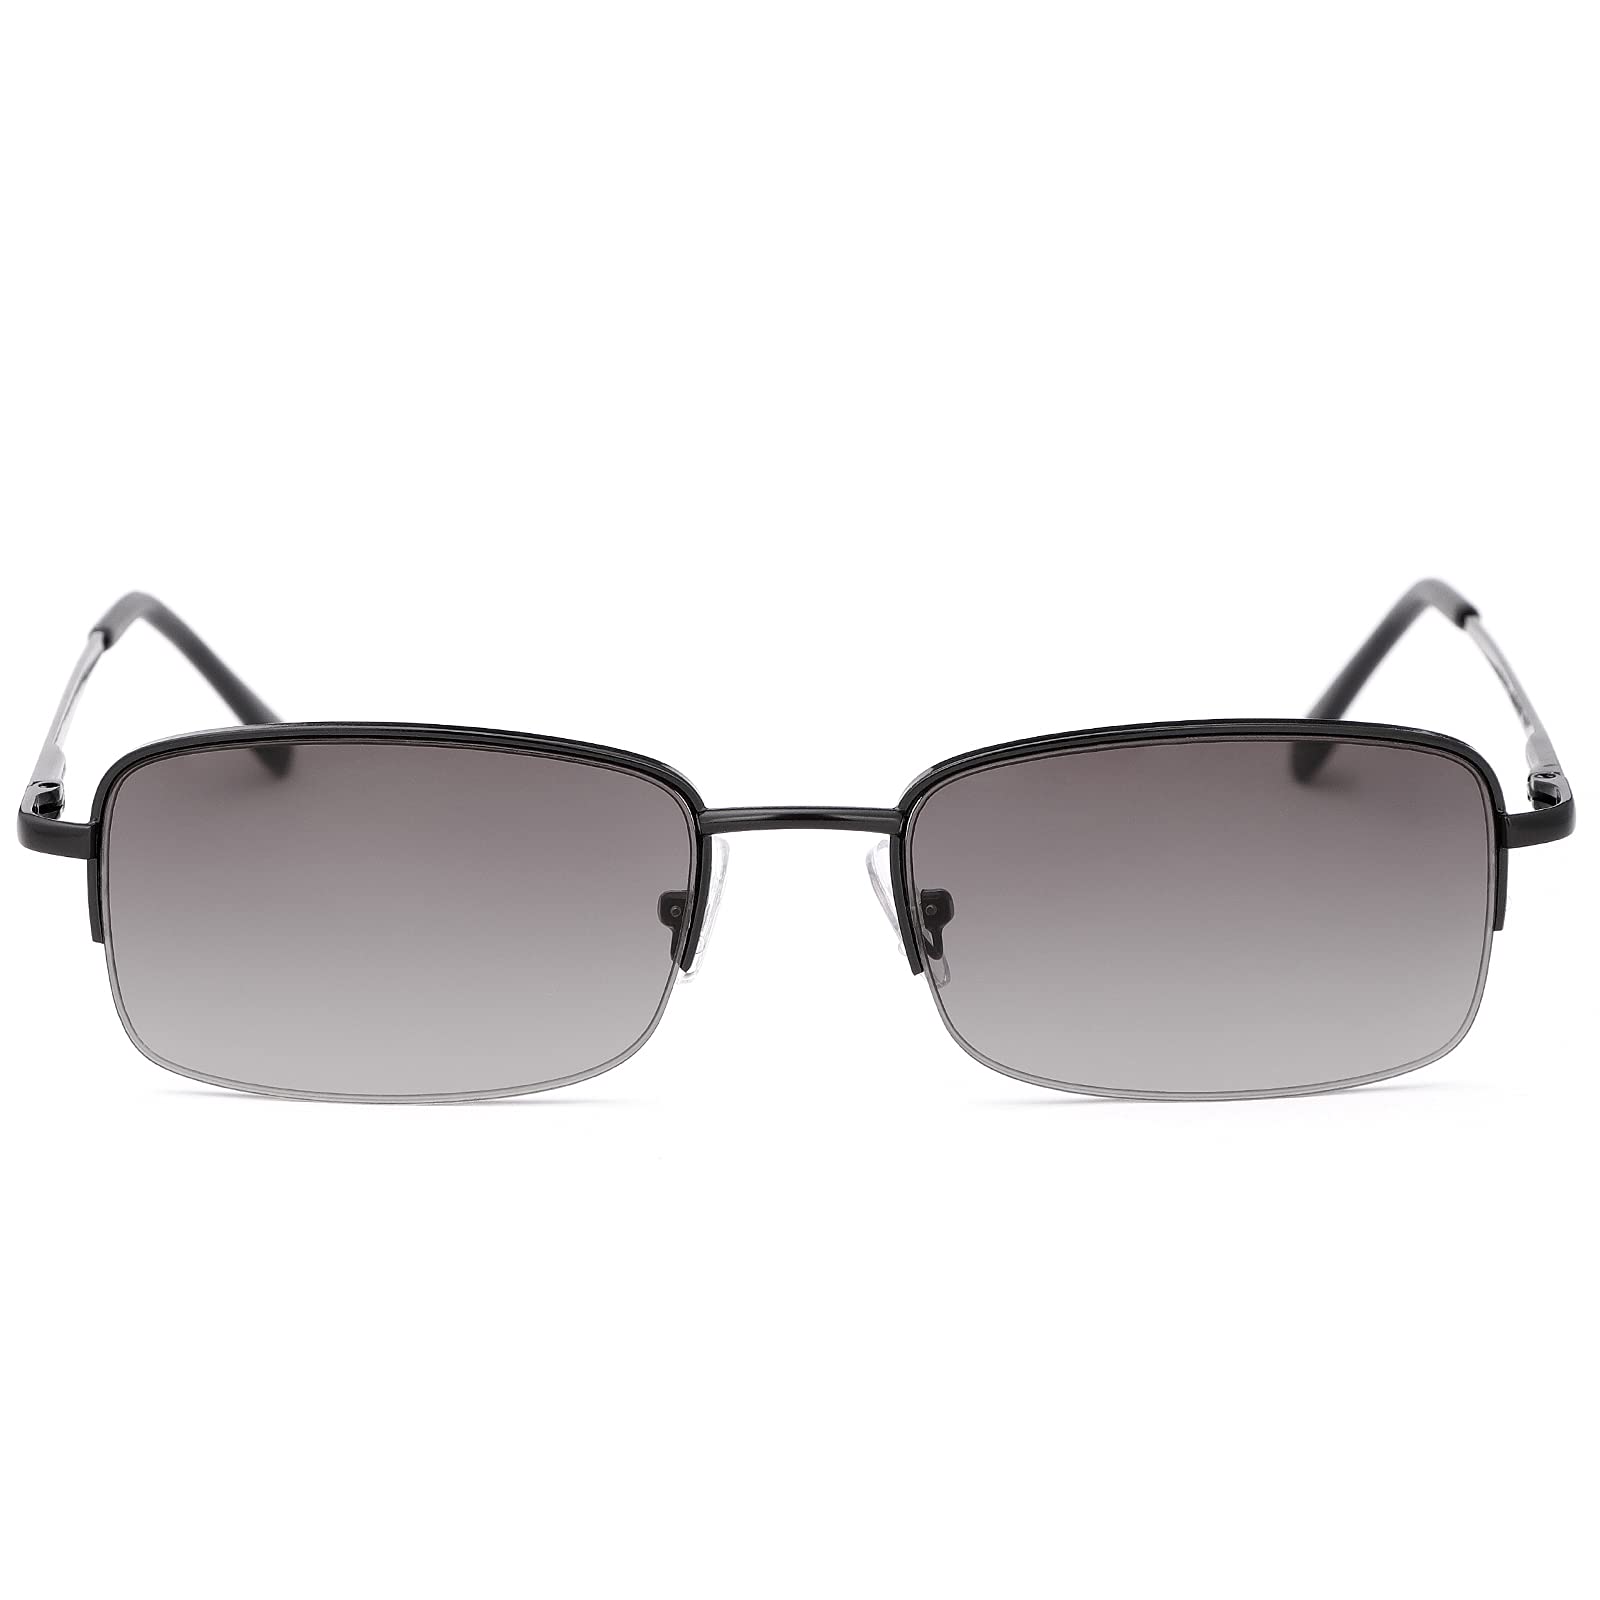 Full Lens Reading Glasses UV400 Protection Spring Hinge Sunglasses